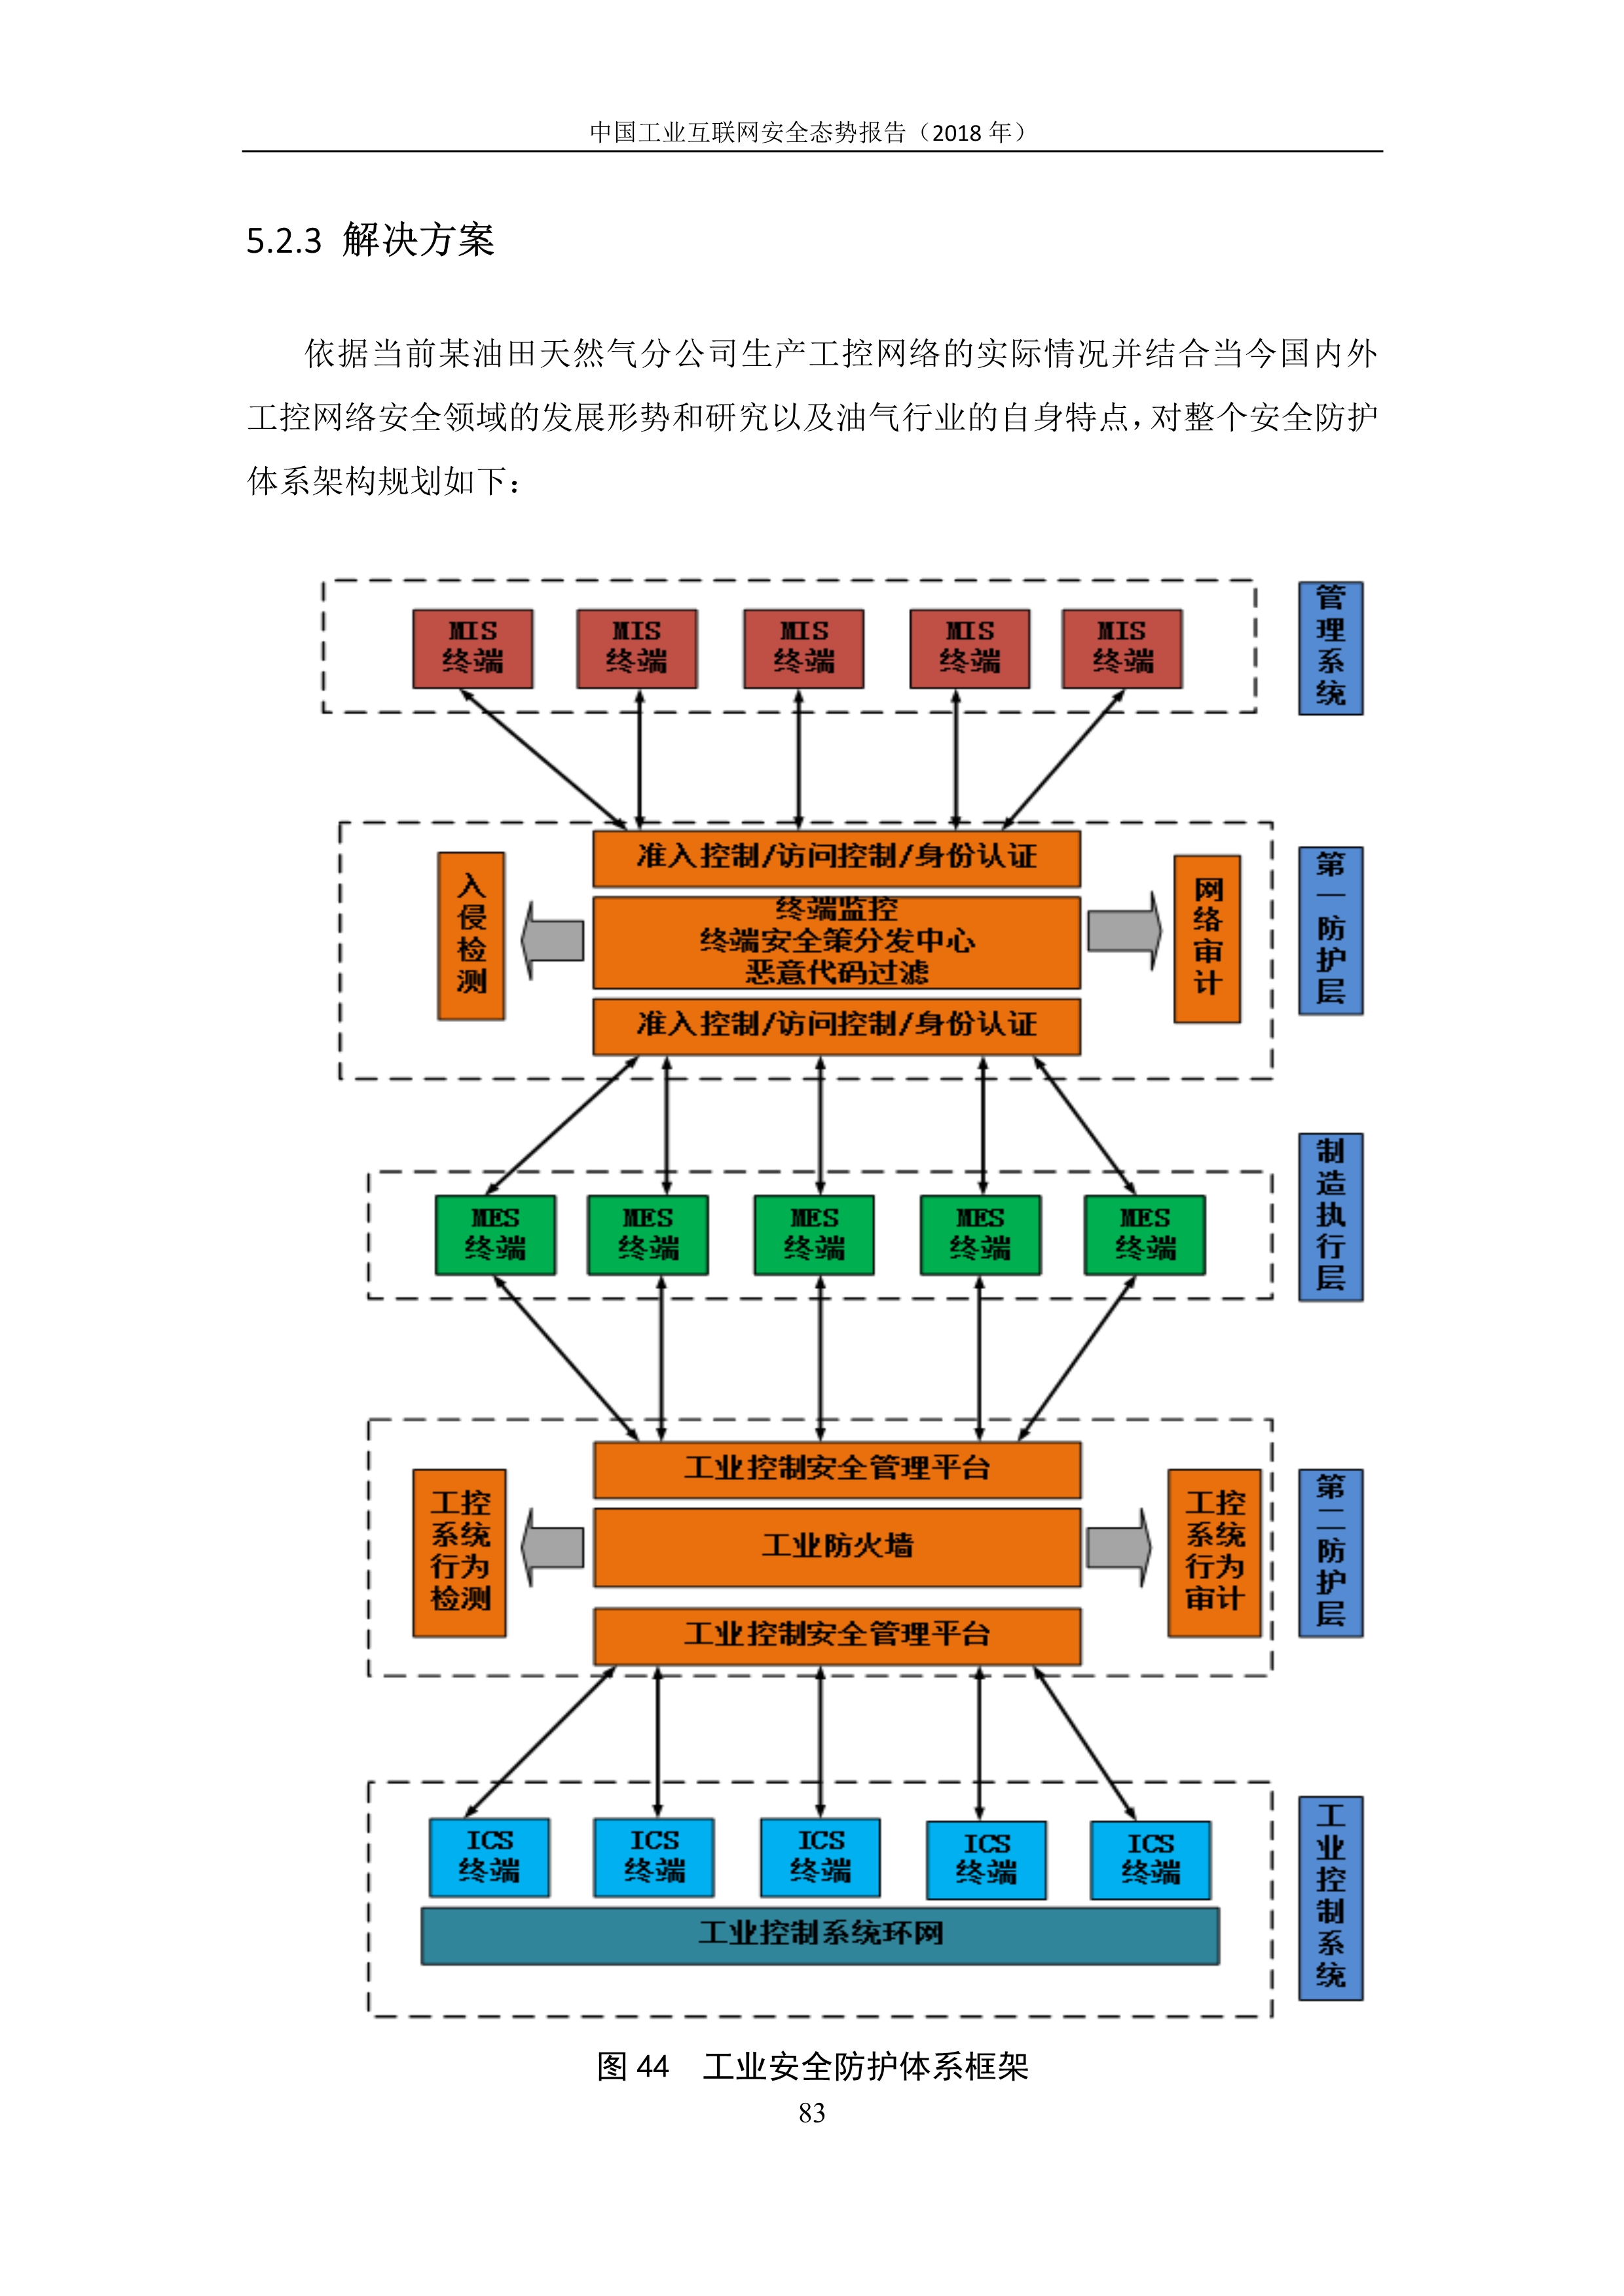 《中国工业互联网安全态势报告（2018年）》全文